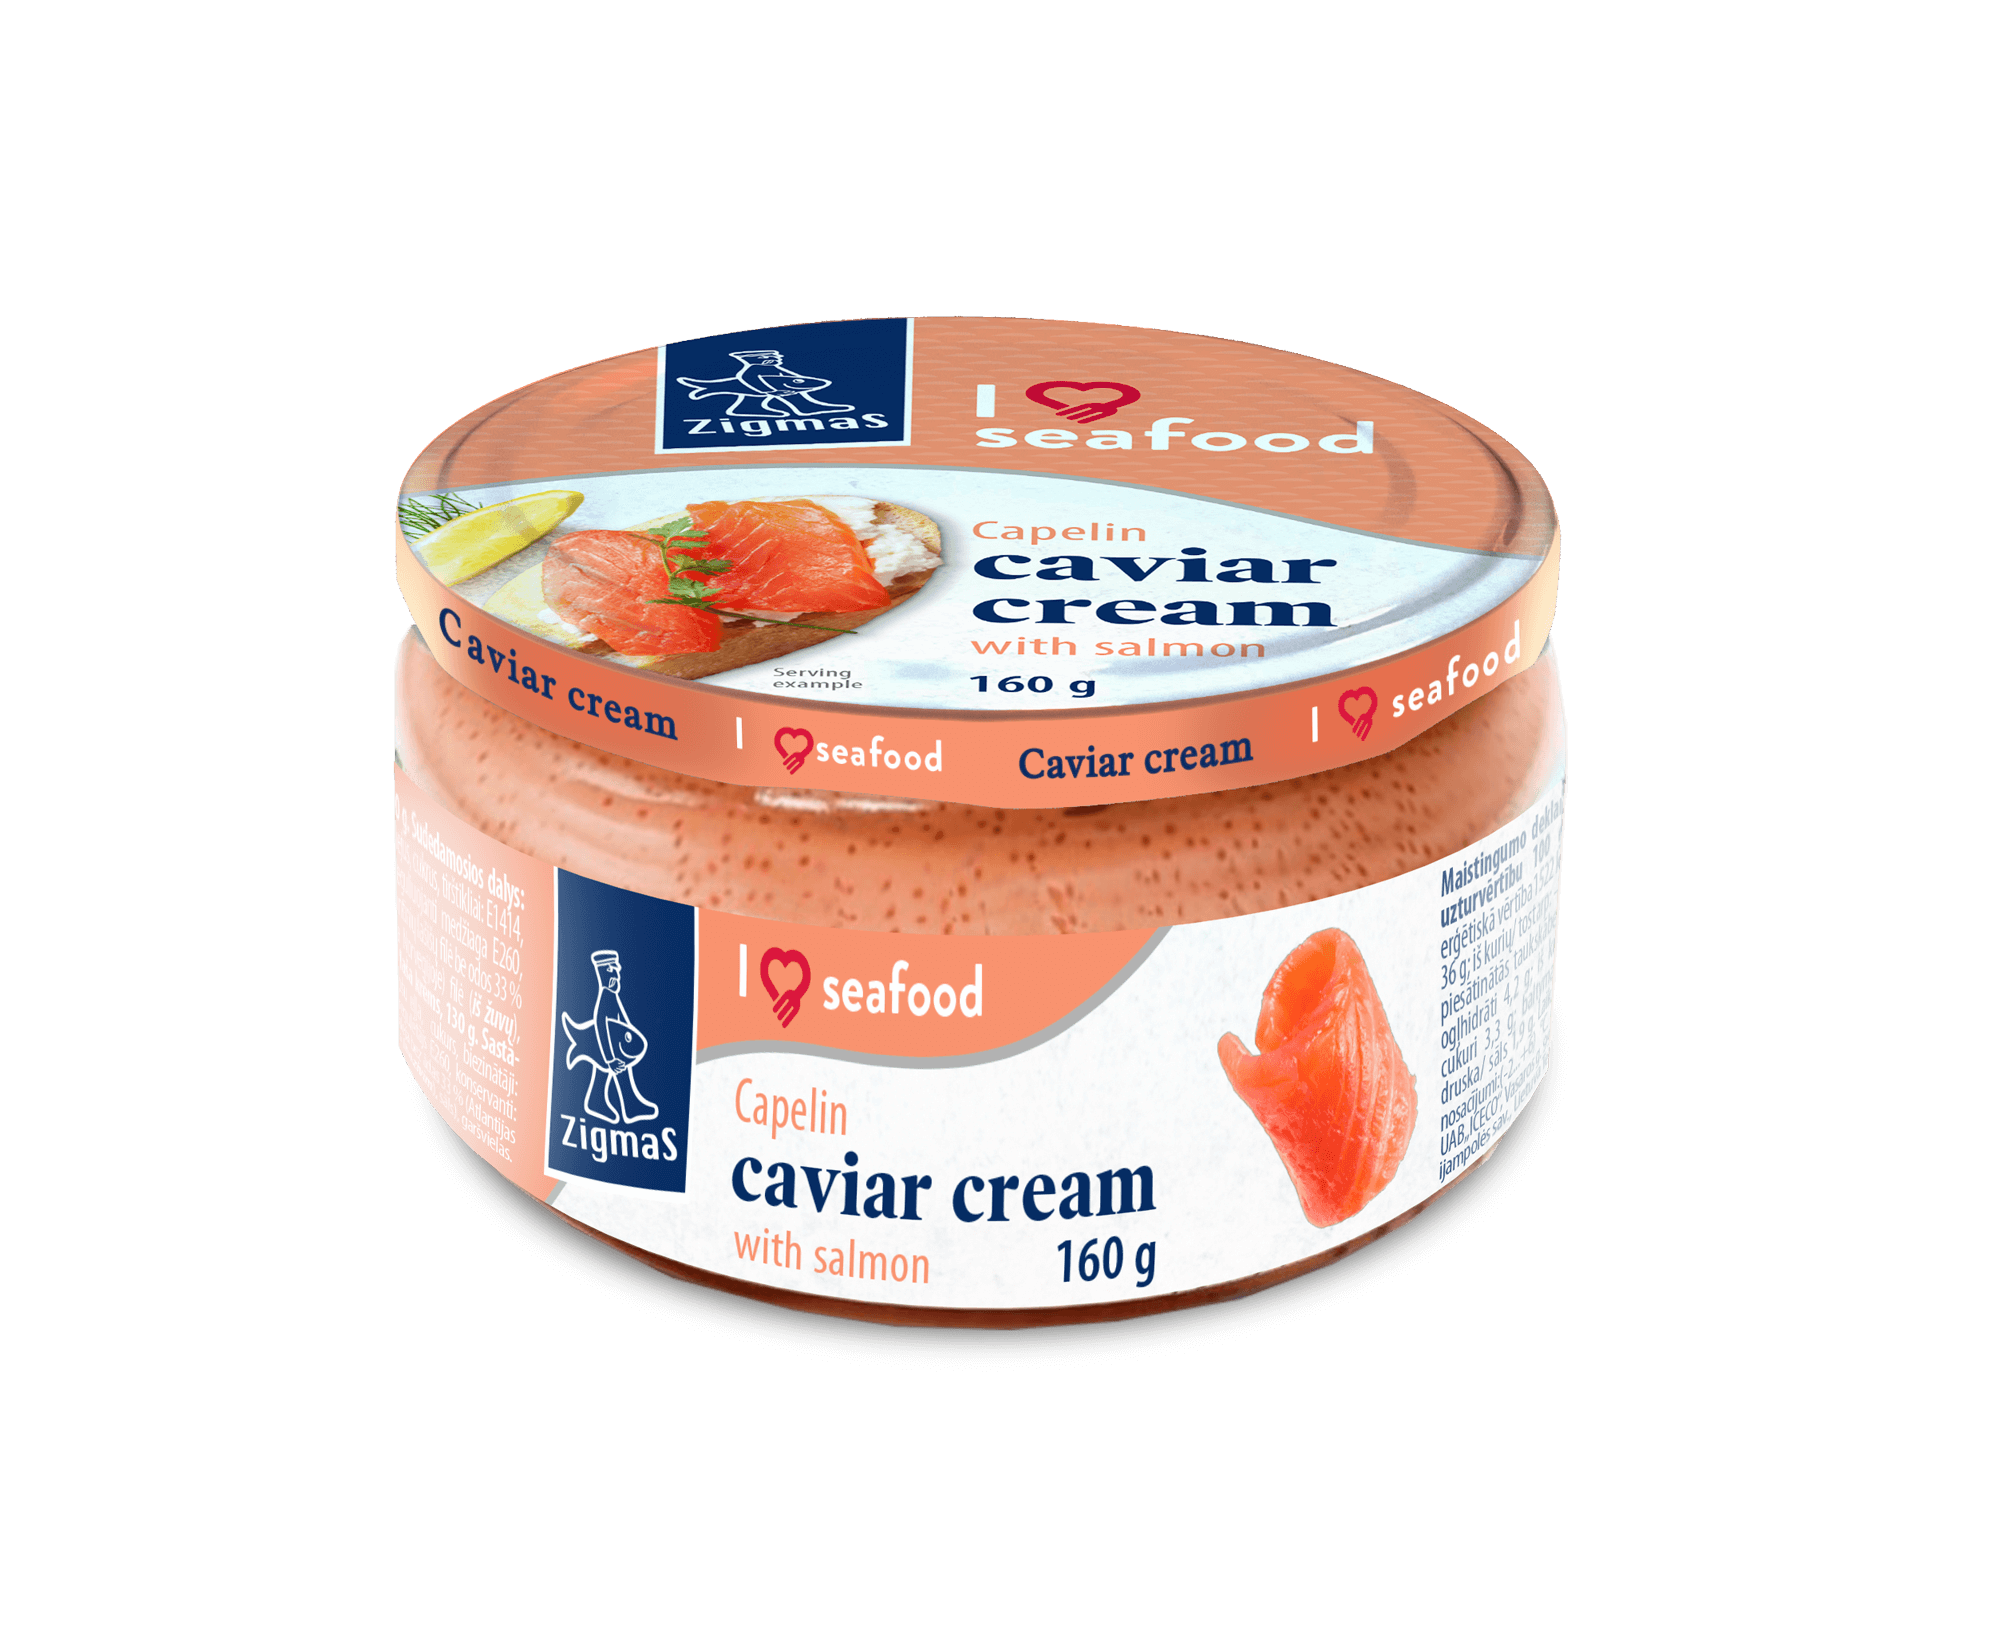 Capelin caviar cream with salmon